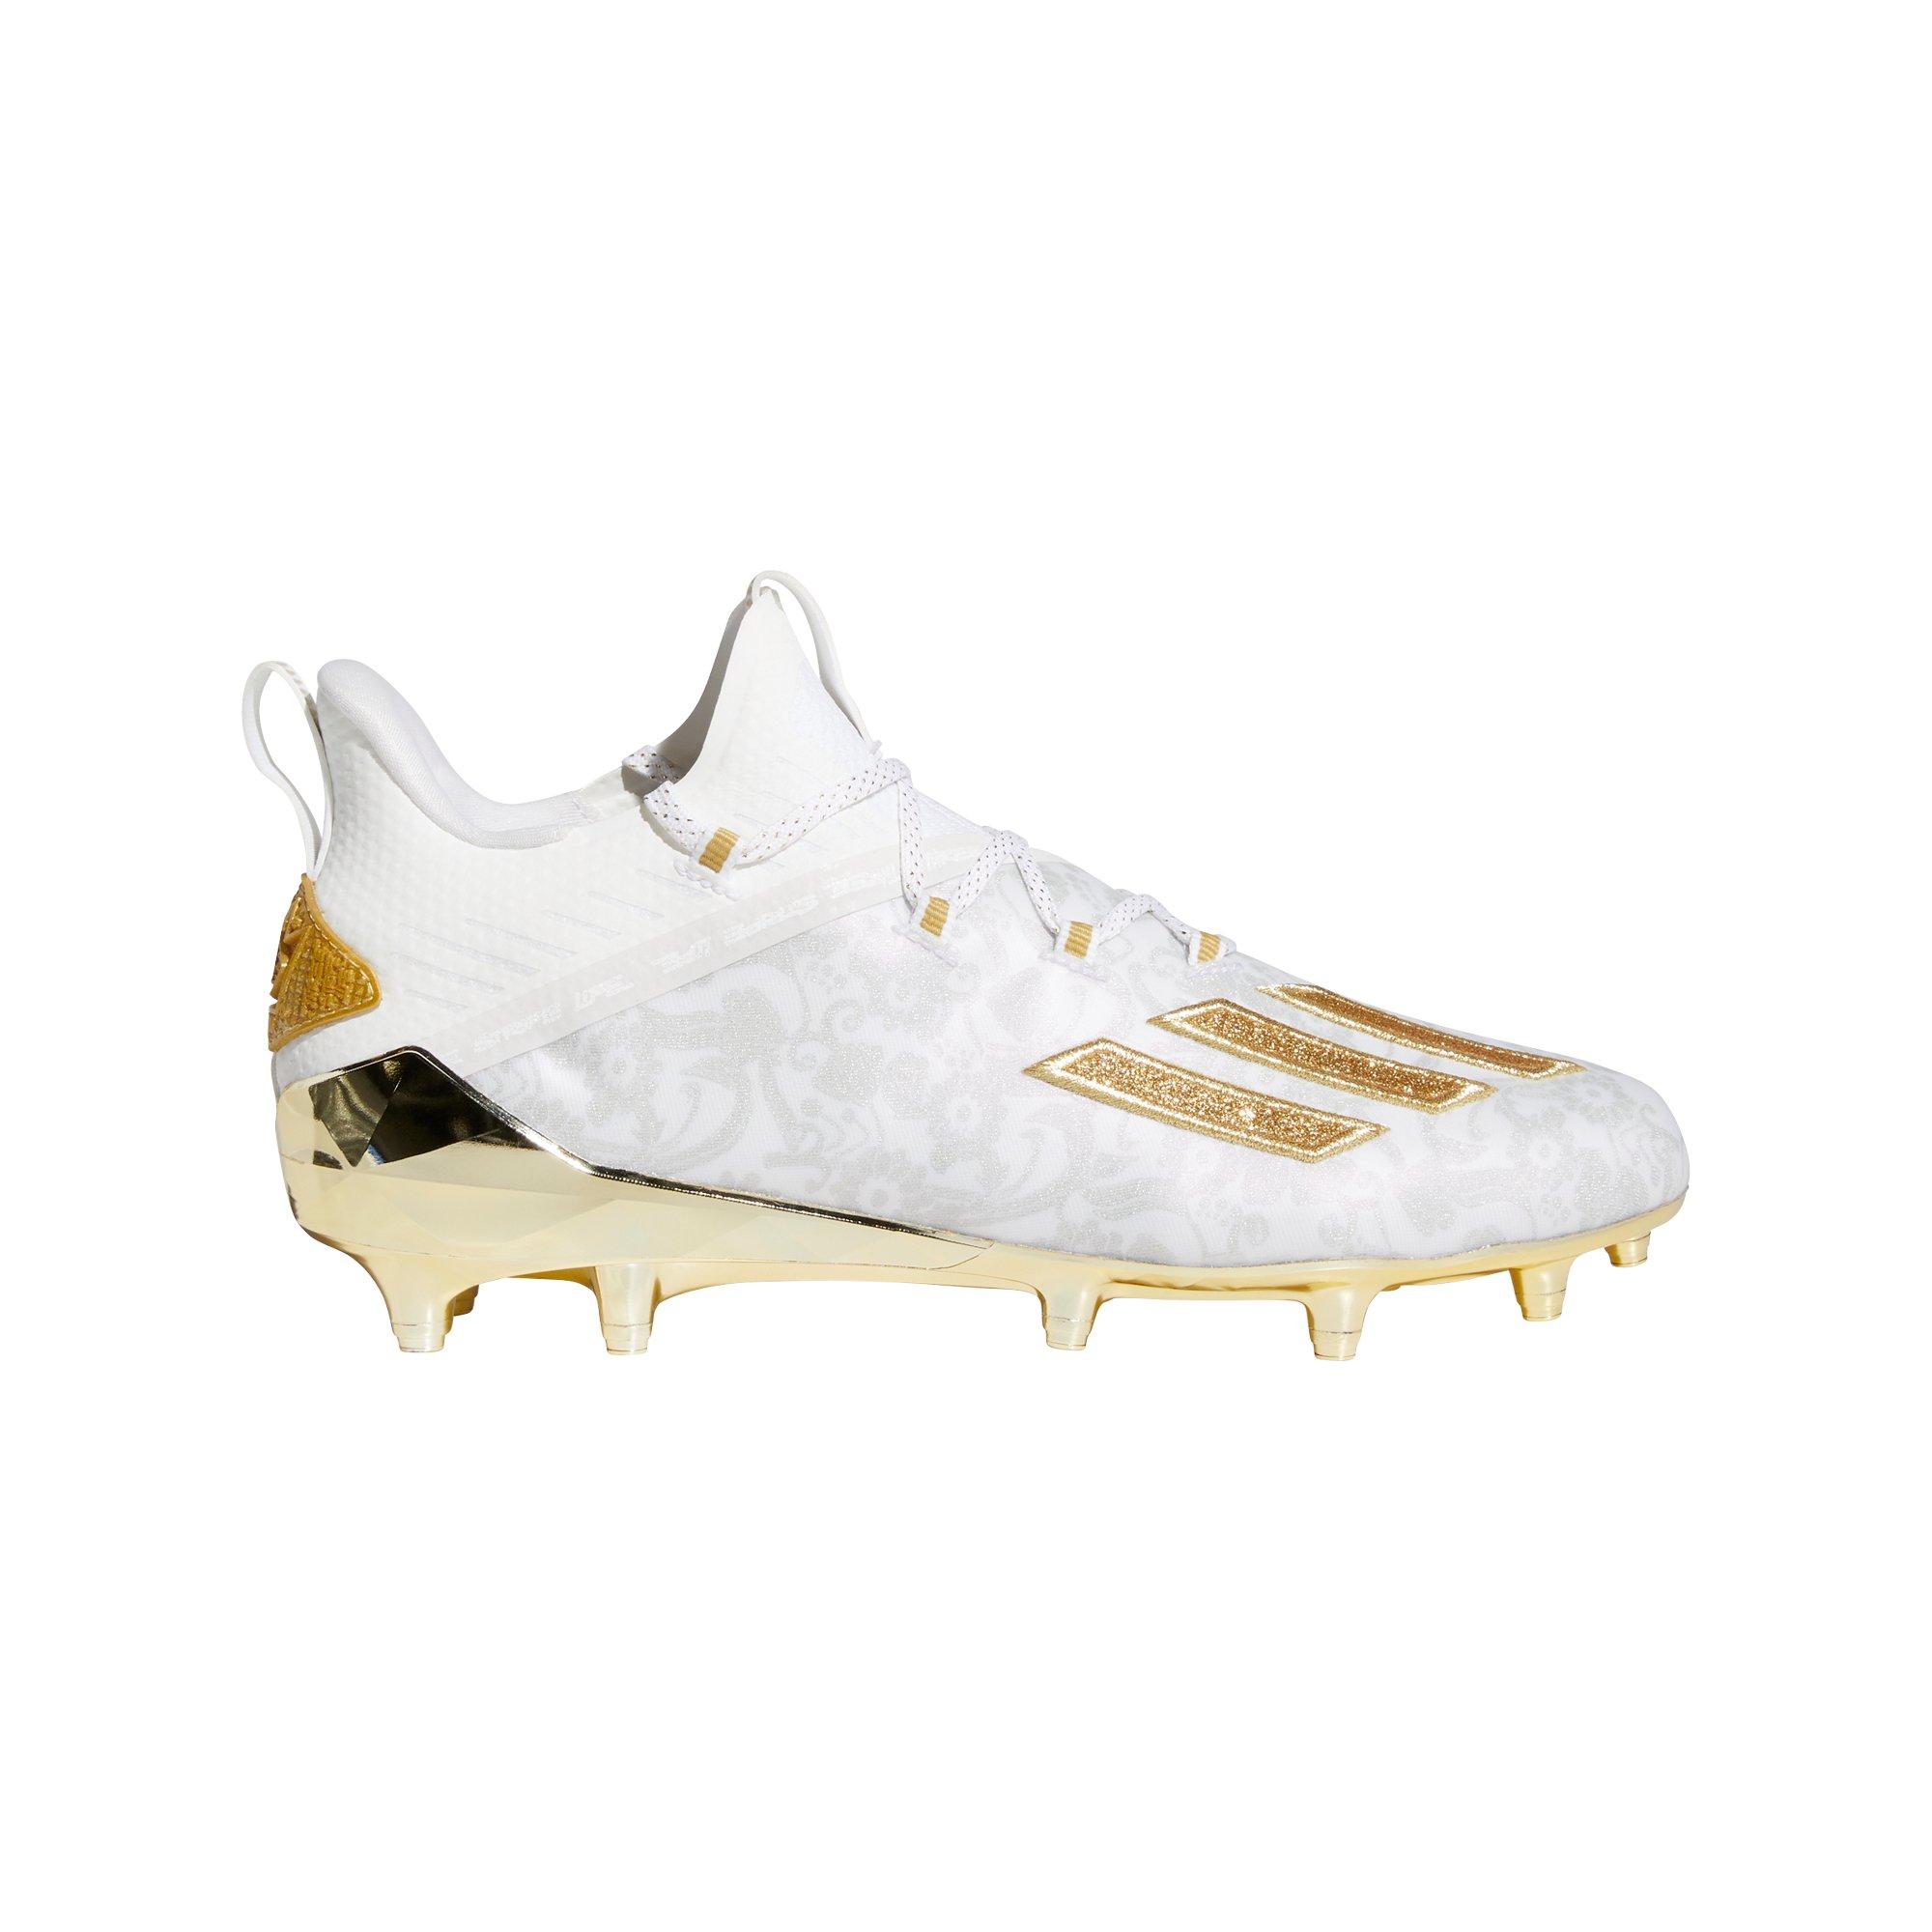 adidas Adizero King "White/Gold" Men's Football